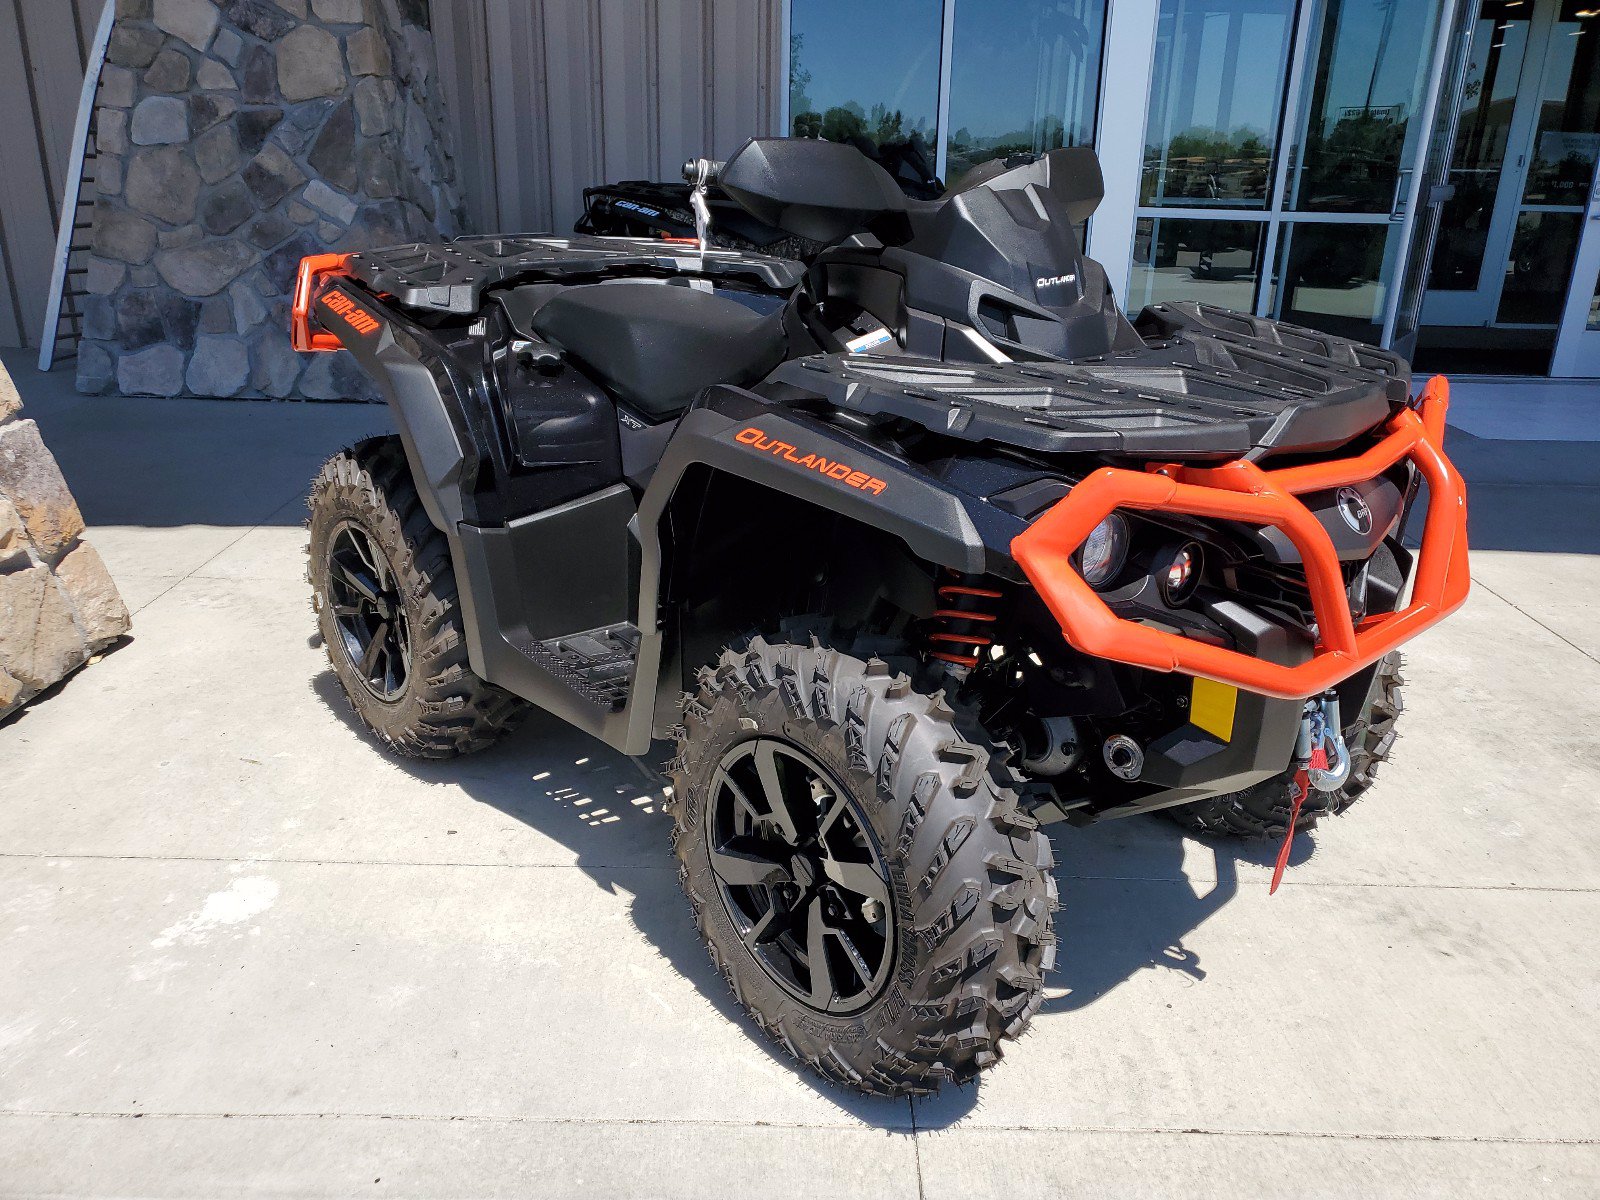 New 2020 CANAM OUTLANDER XT 1000R ATV in Boise CML239 Dennis Dillon